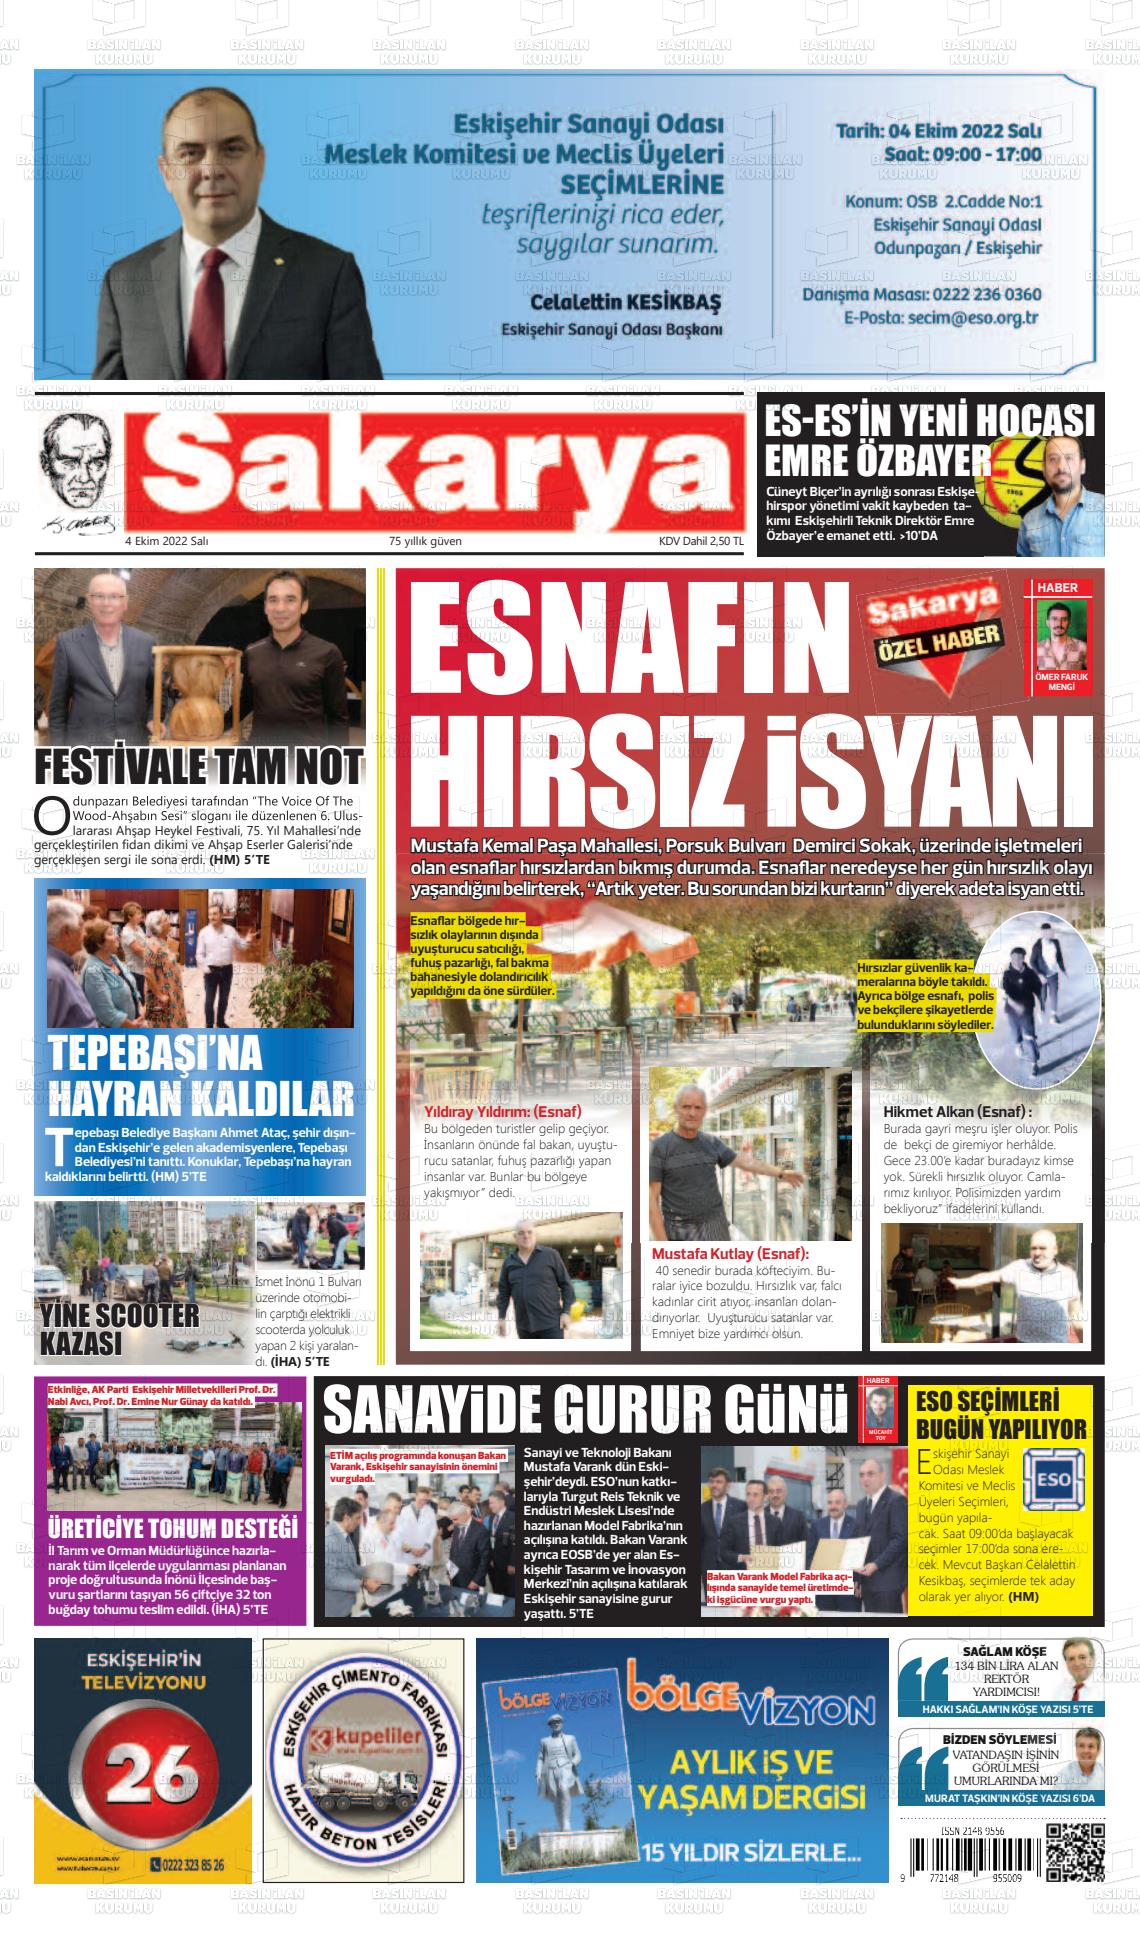 04 Ekim 2022 Sakarya Gazete Manşeti